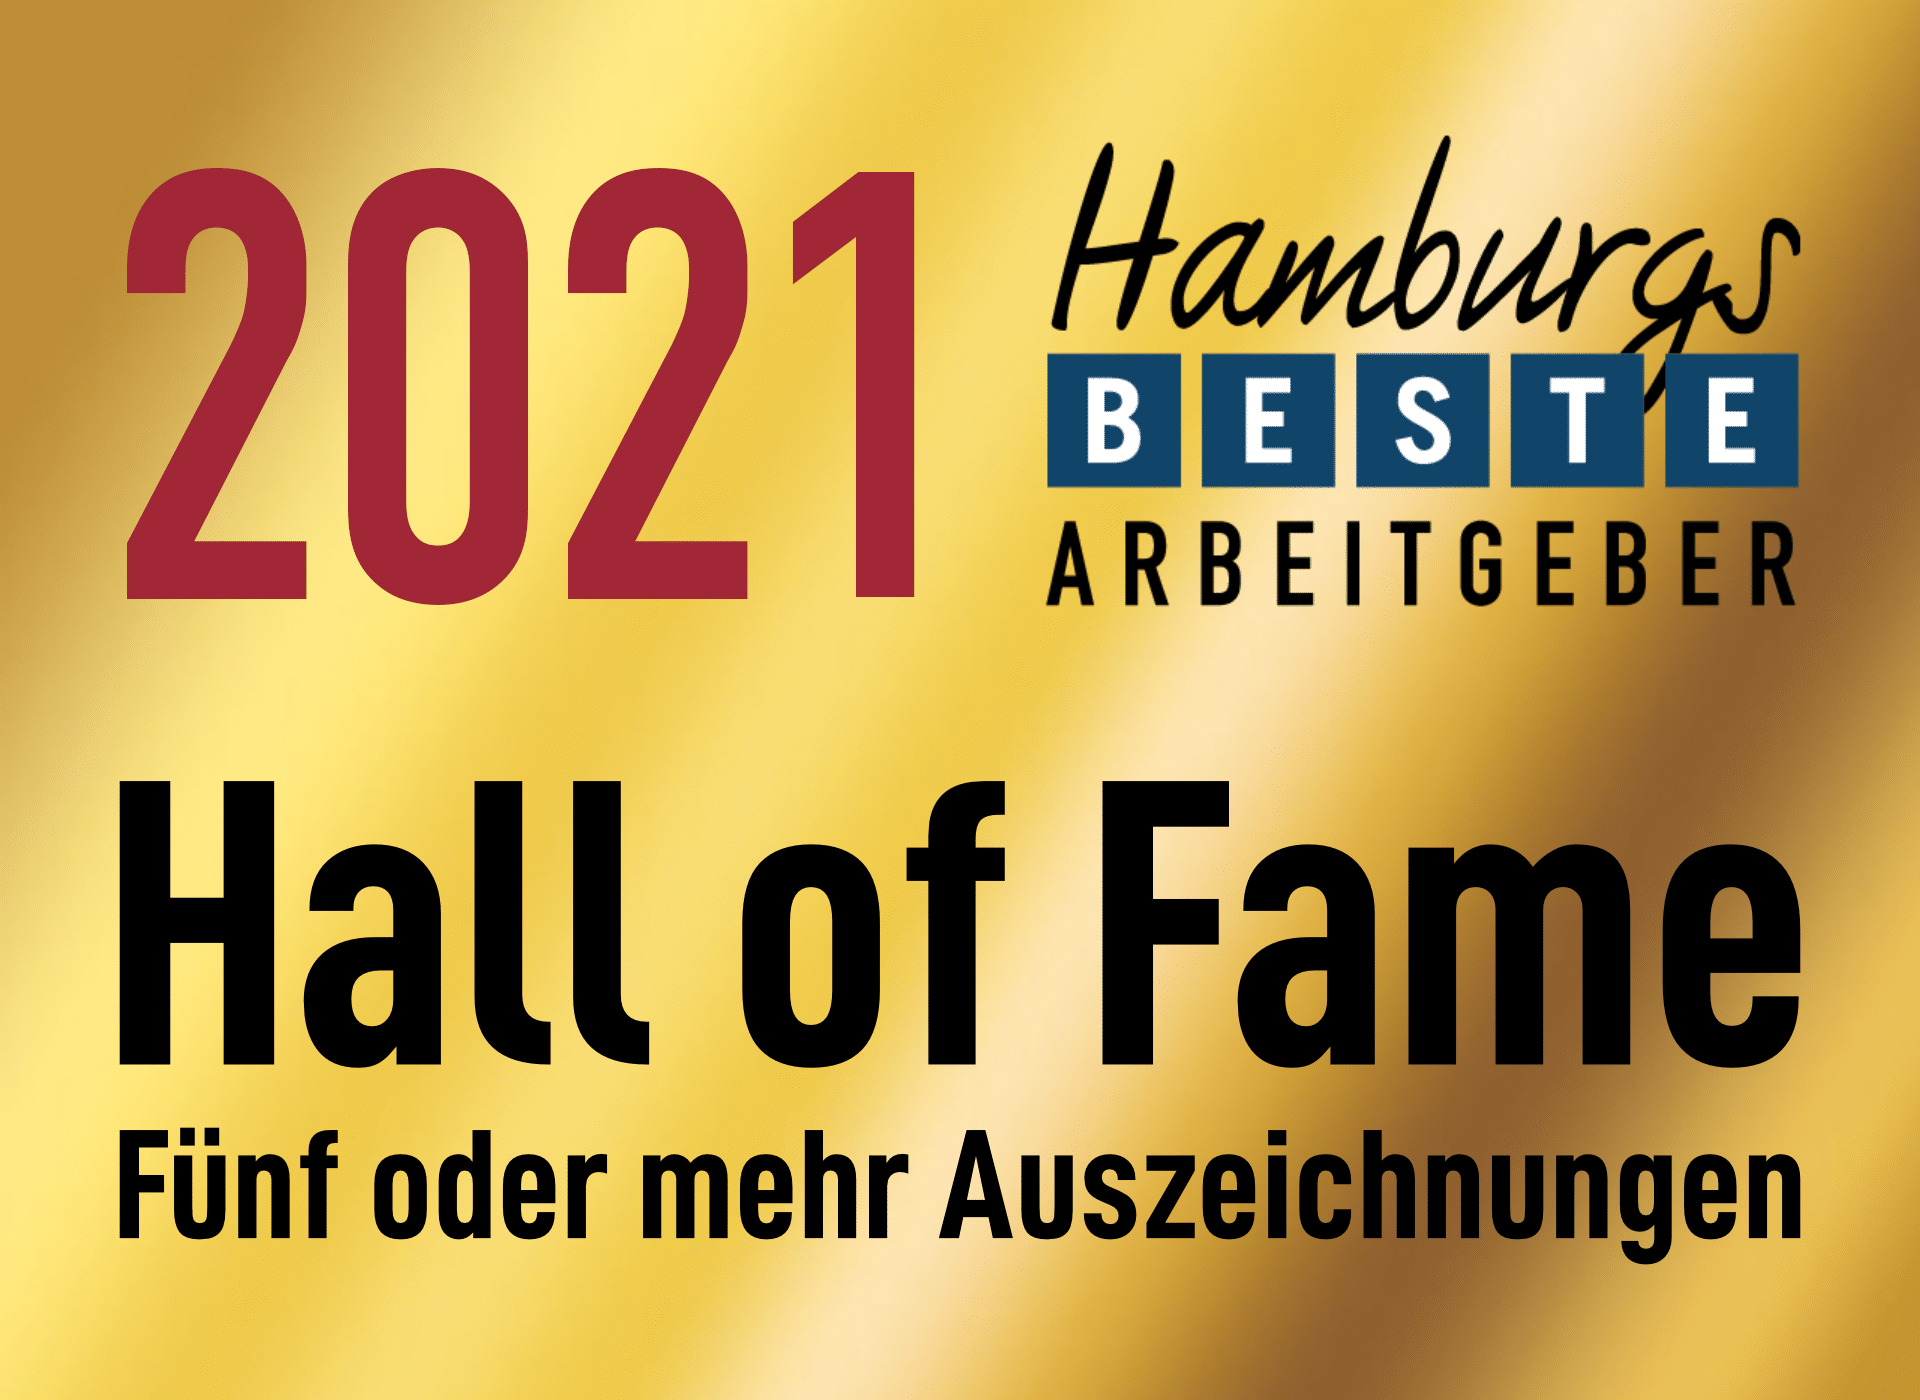 Hamburgs beste Arbeitgeber Hall of Fame 2021